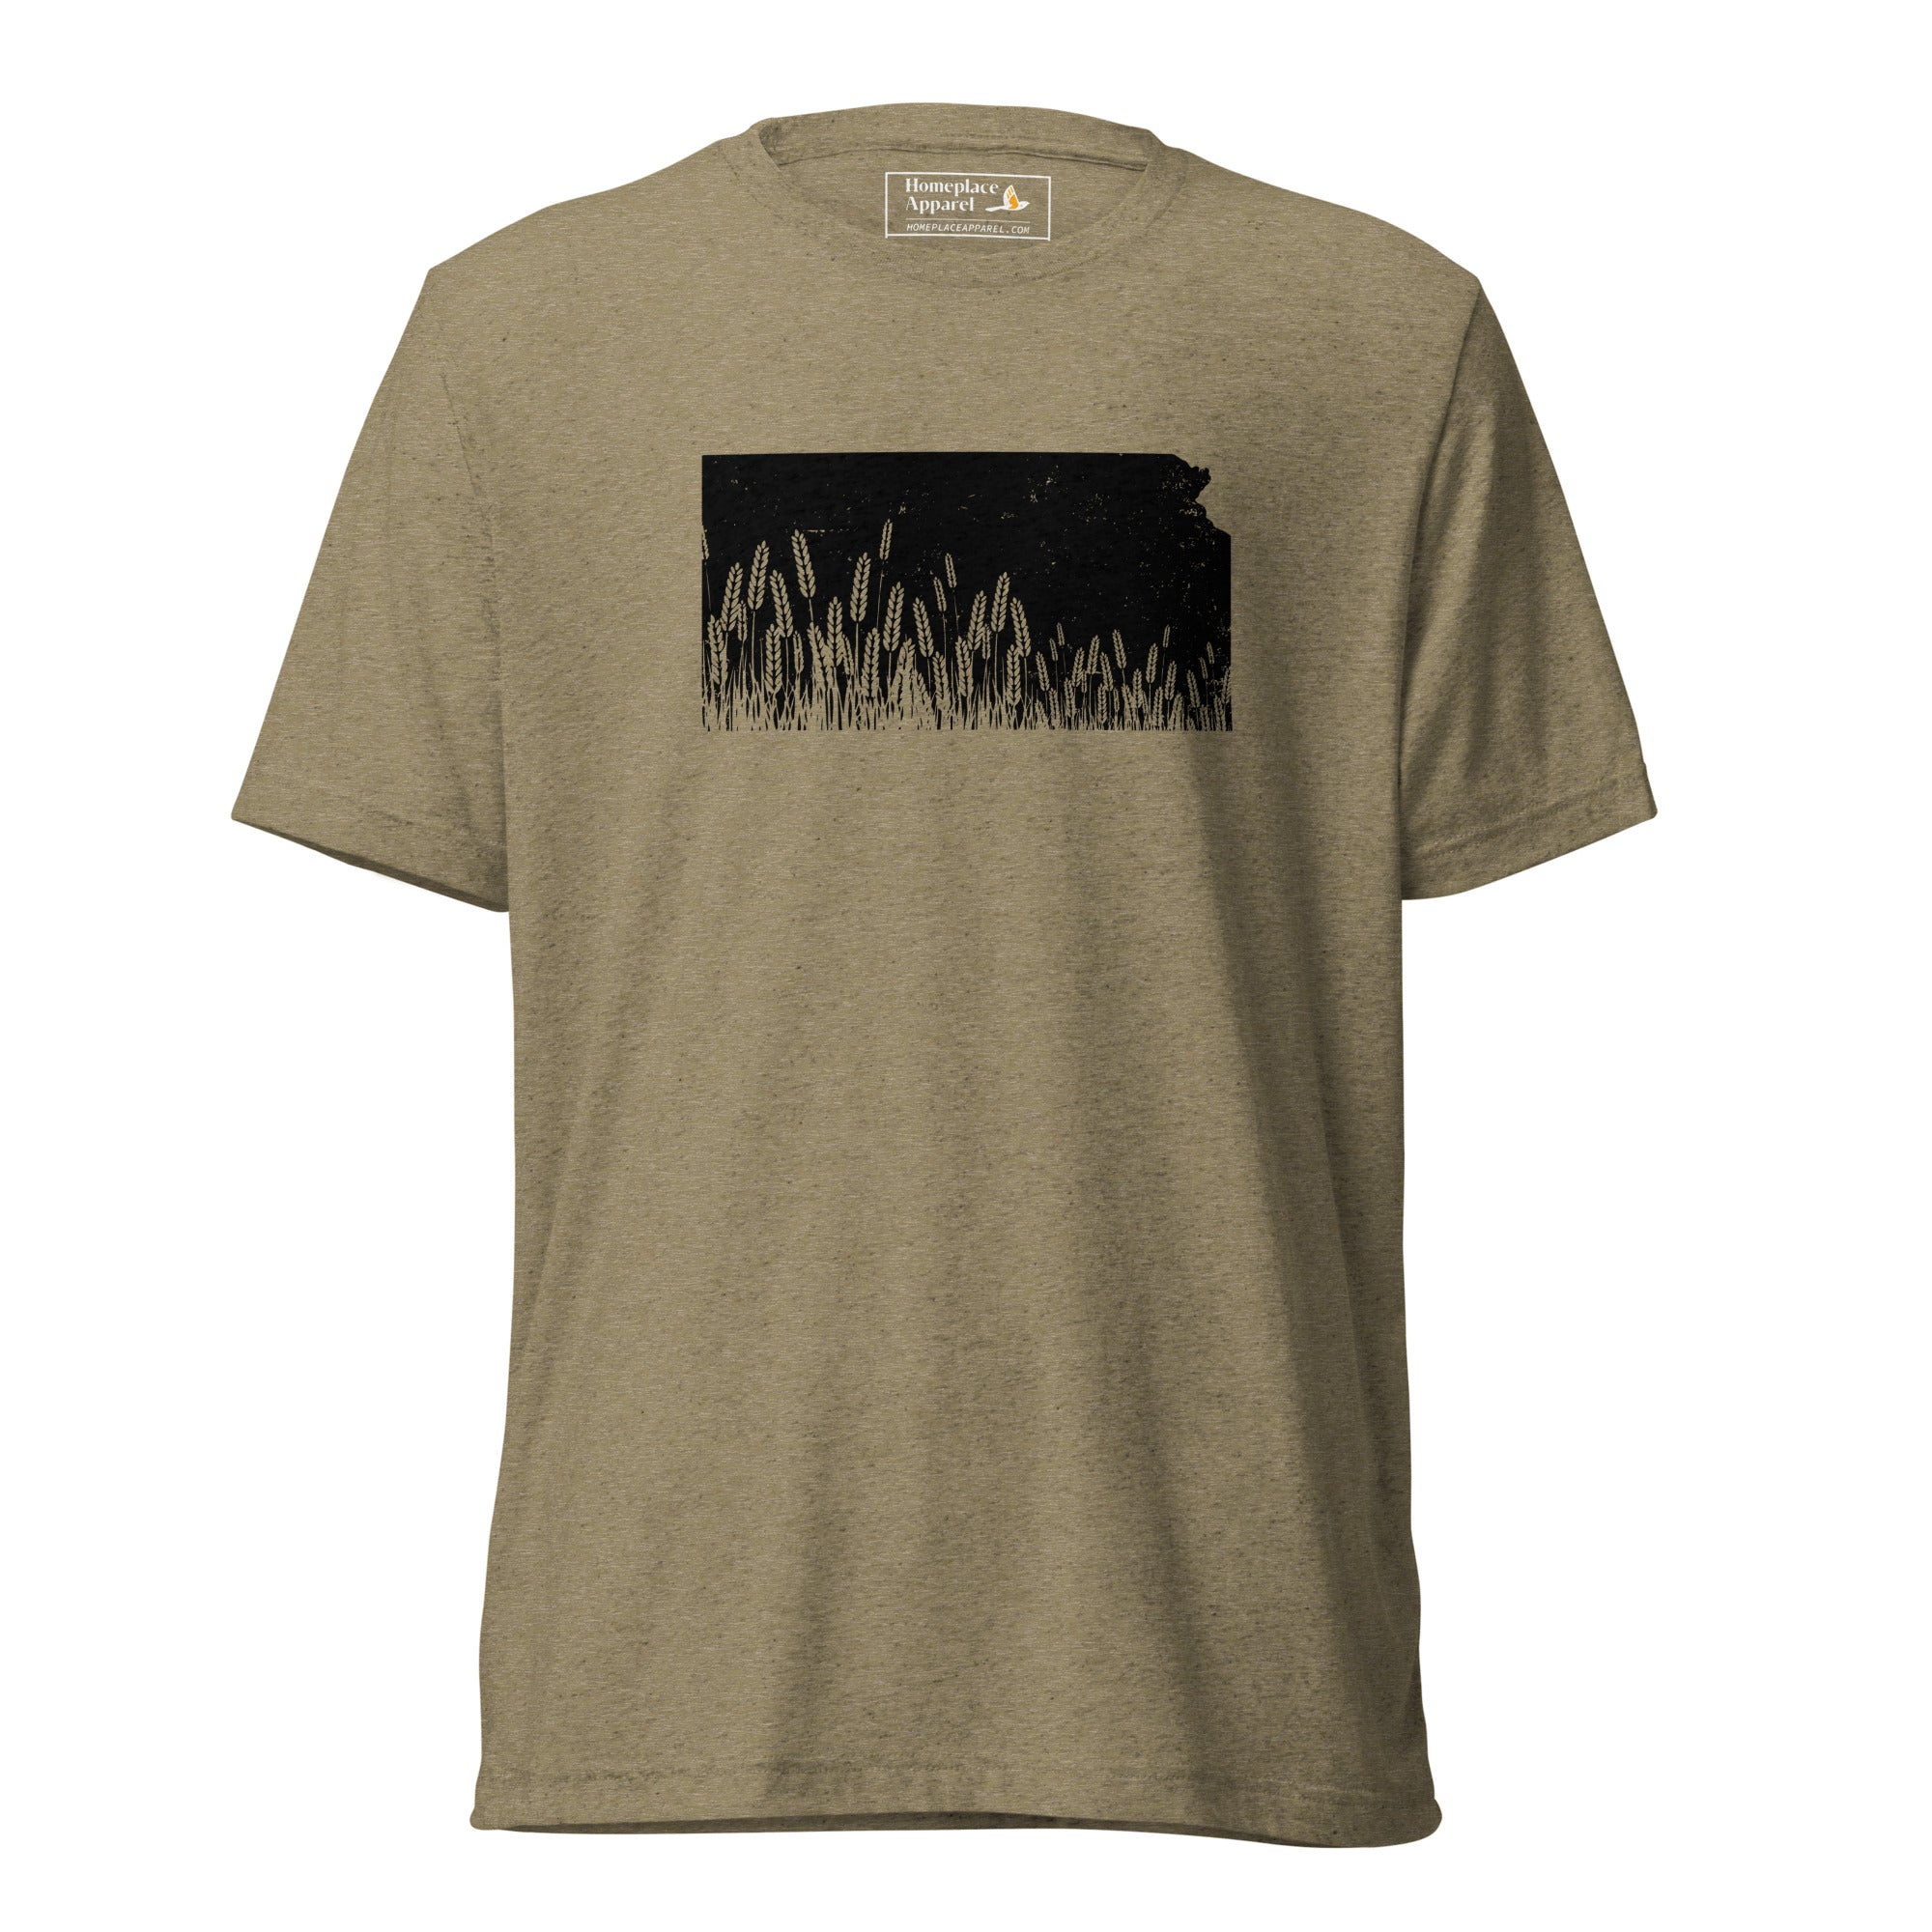 unisex-tri-blend-t-shirt-olive-triblend-front-650f70d174ad4.jpg